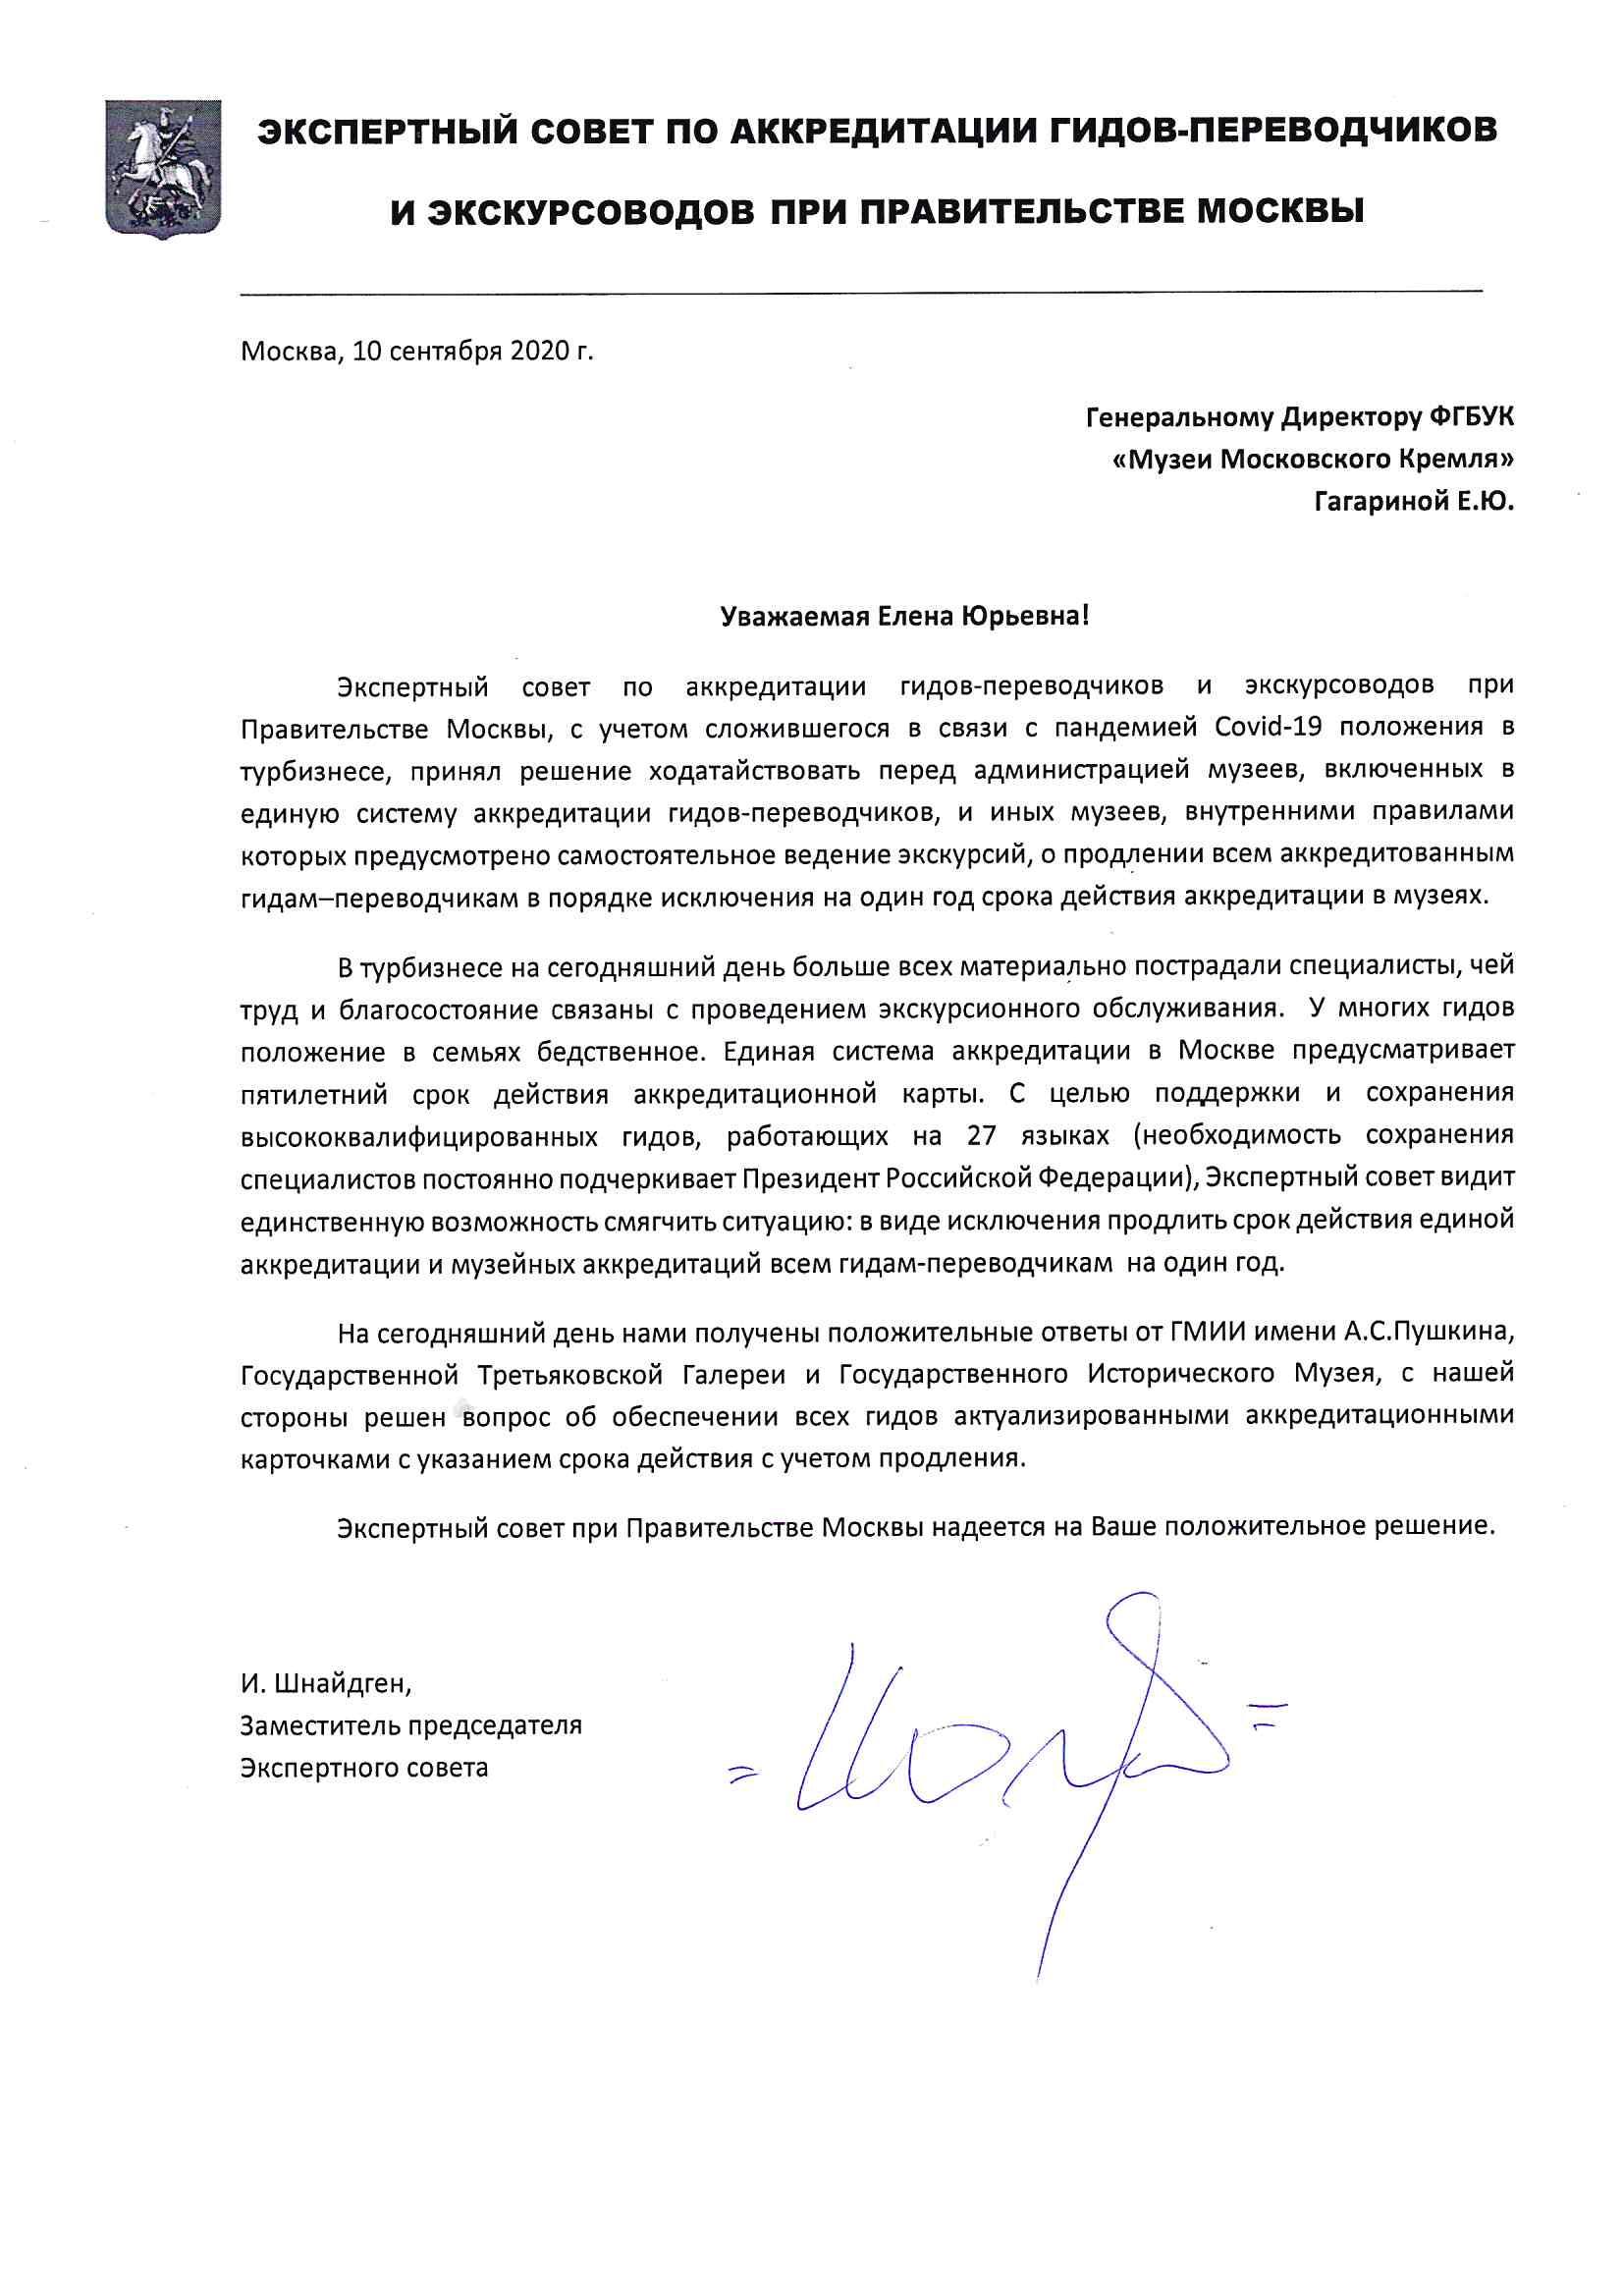 Письмо Генеральному Директору ФГБУК «Музеи Московского Кремля» Гагариной Е.Ю.от Экспертного совета